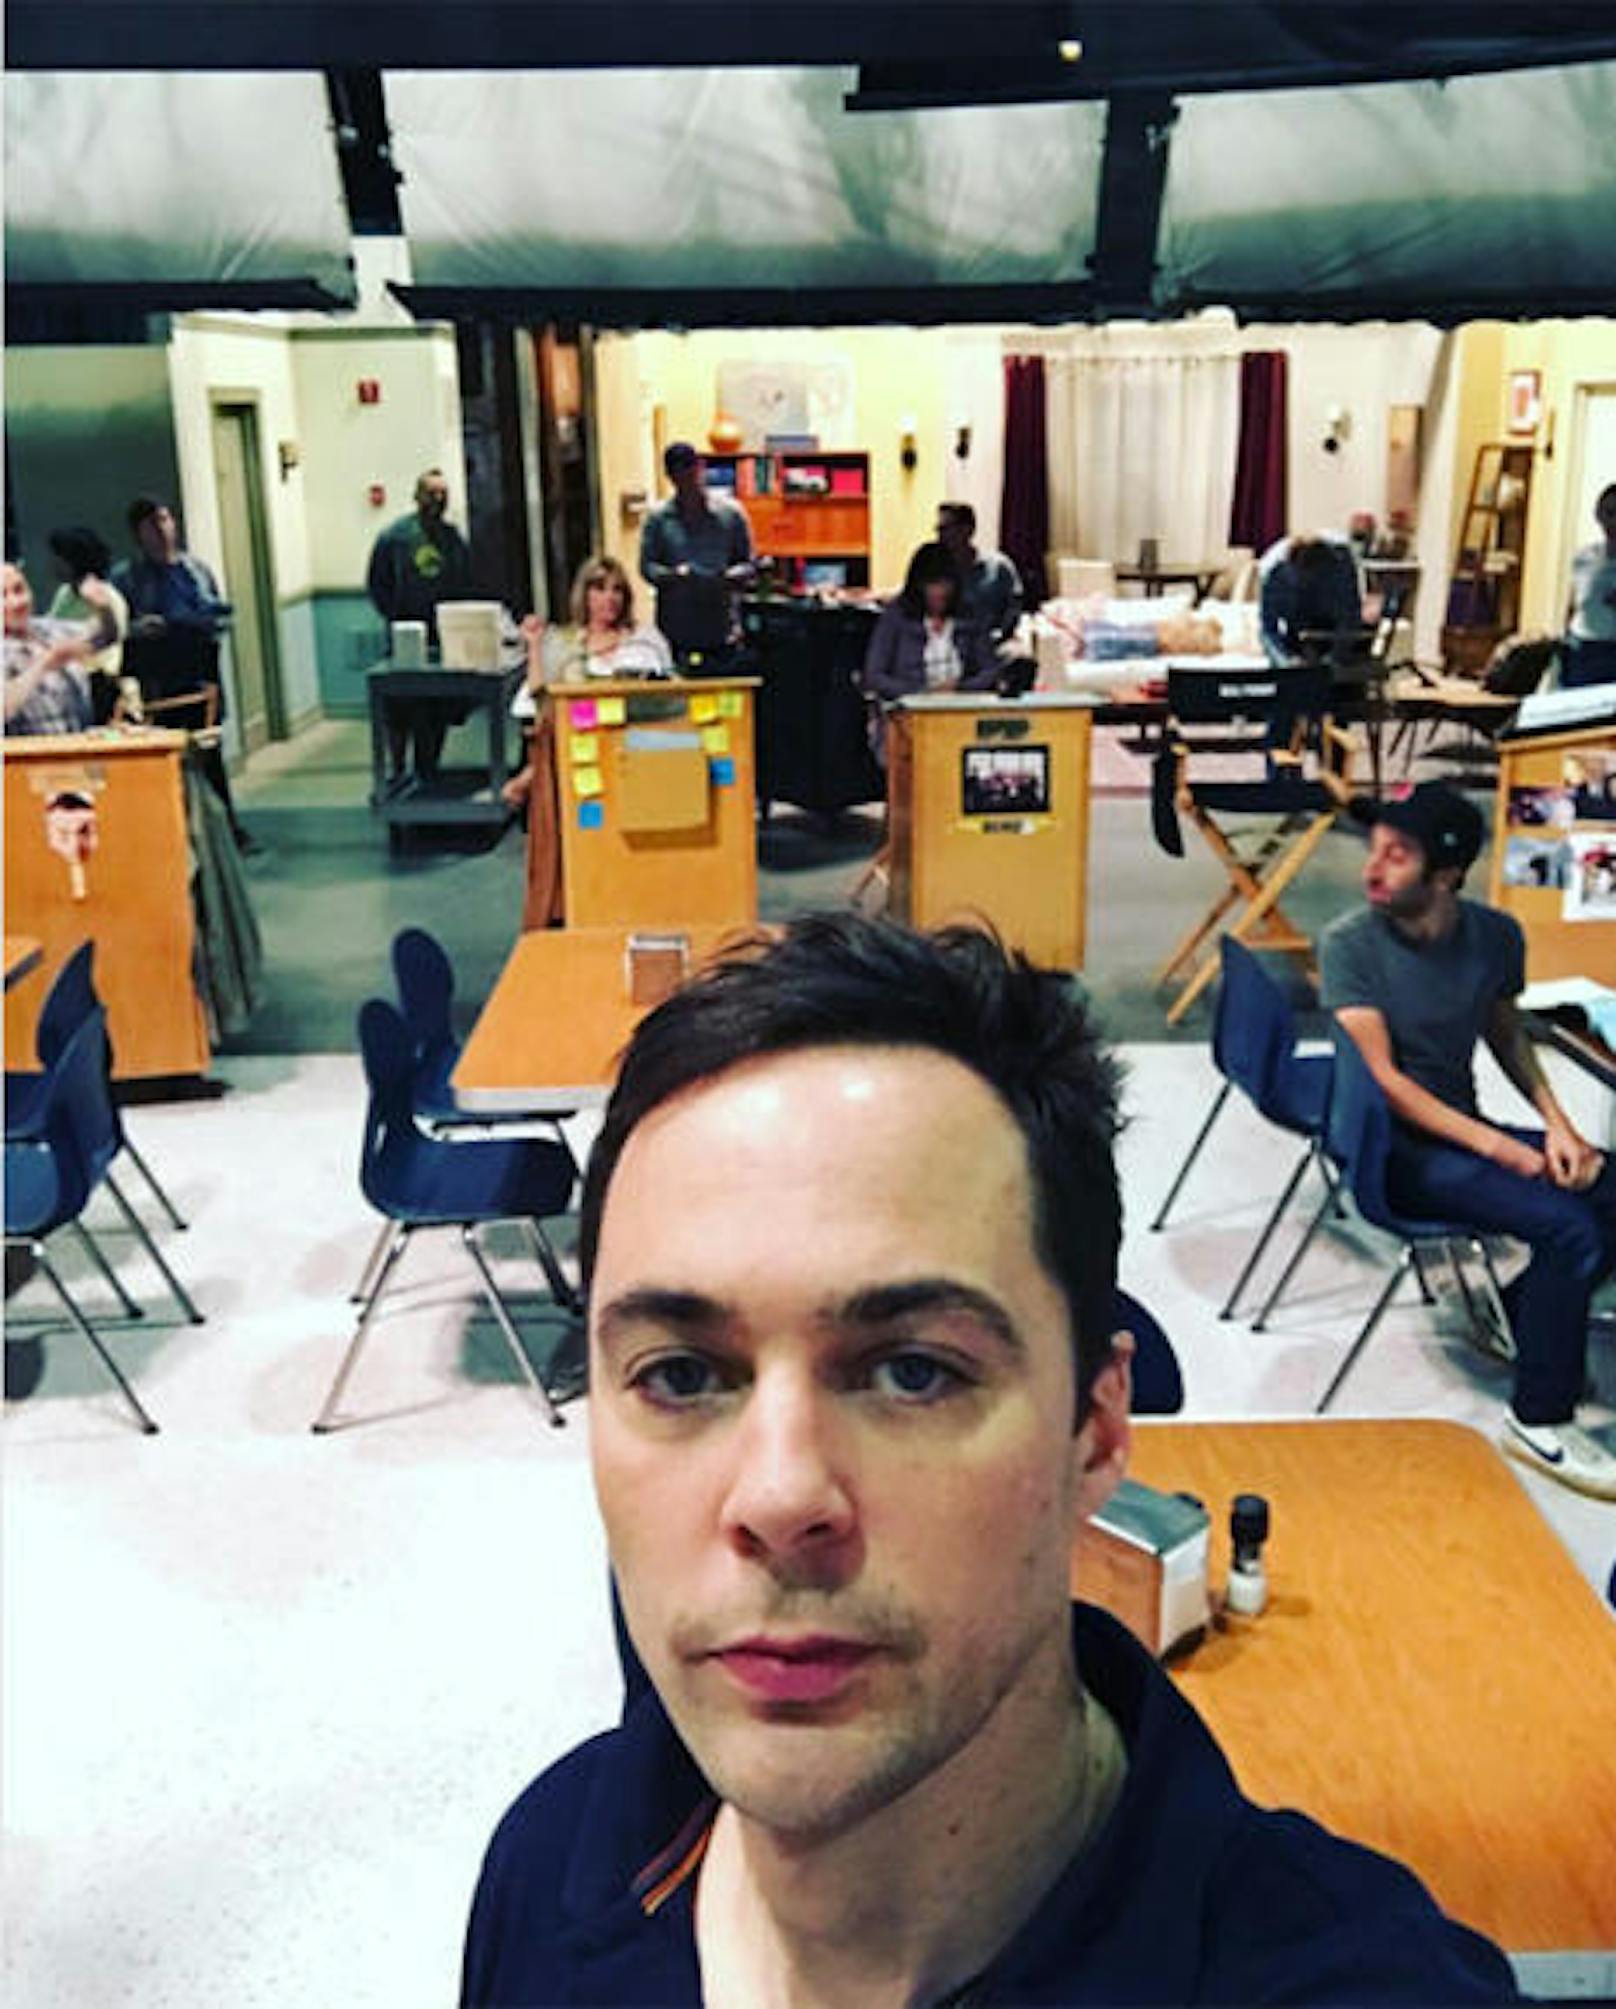 20.10.2017: Es geht wieder los: Jim Parsons (Sheldon) feiert den Drehstart zur neuen Staffel der Big Bang Theory mit einem Instagram-Foto. Im Vordergrund: Das Set der Uni-Kantine, im Hintergrund Leonard und Sheldons Wohnzimmer